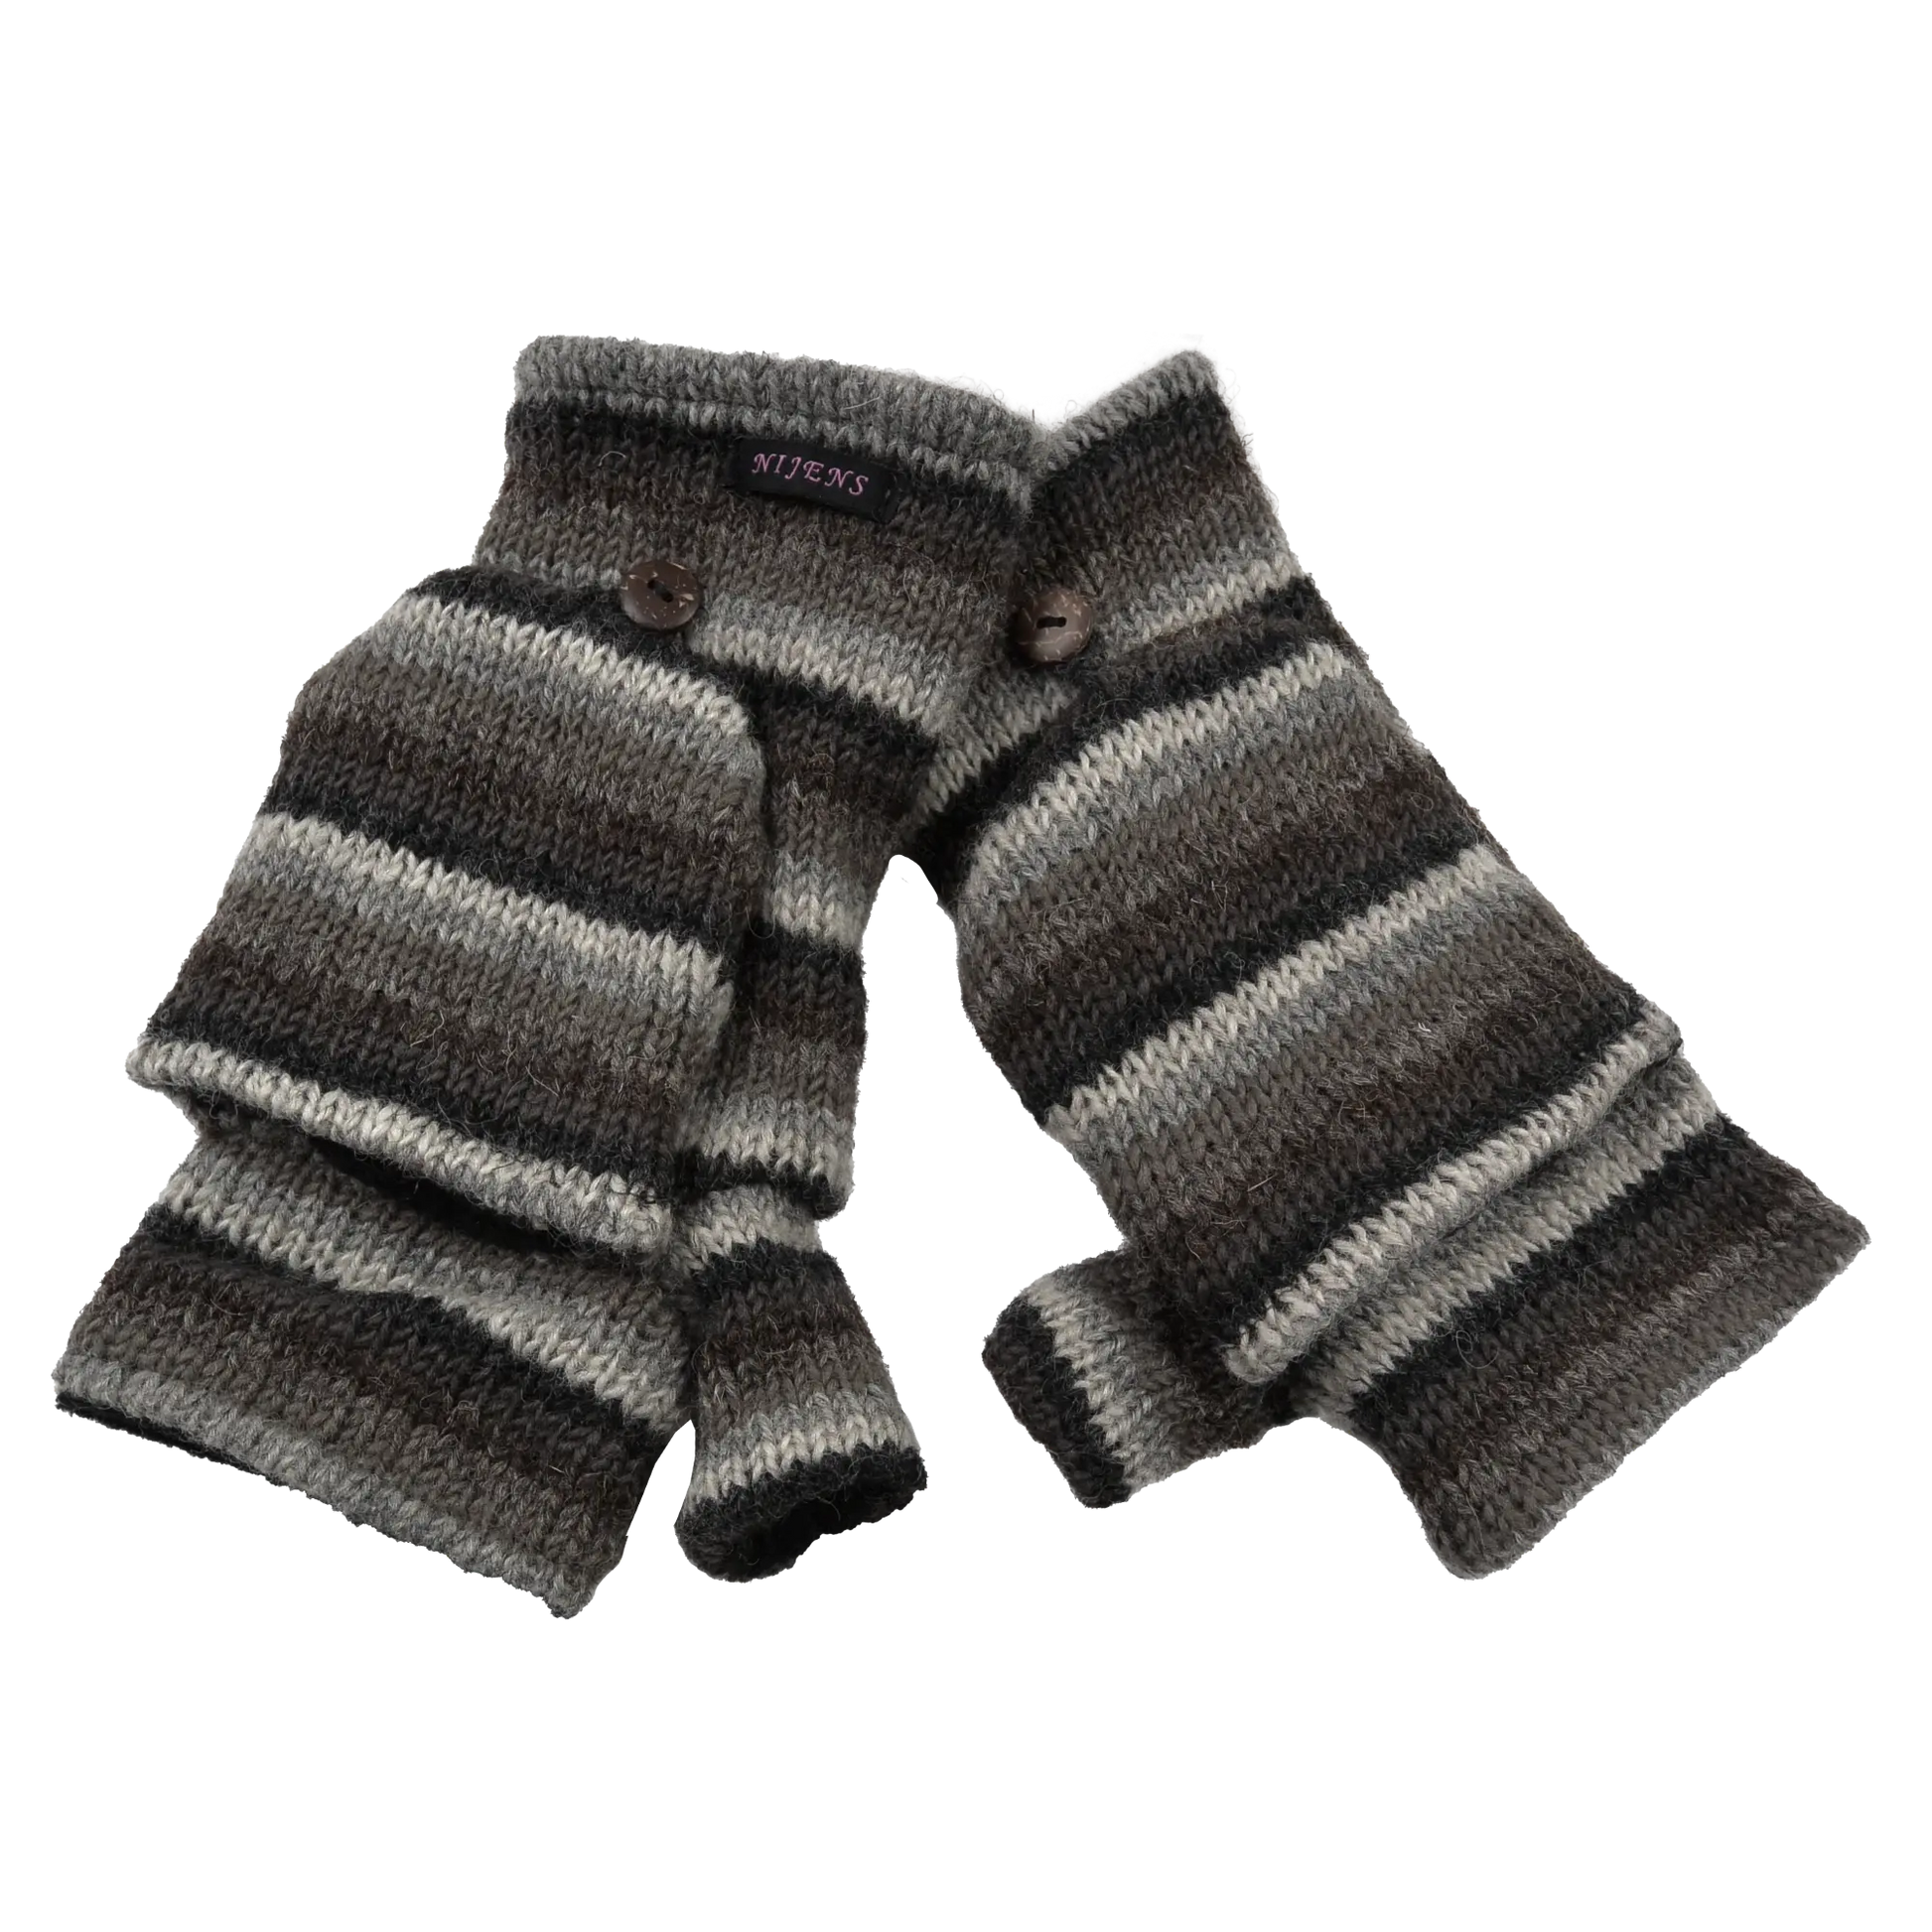 Fingerfreie Handschuhe aus Wolle gestreift in Braun, Grautöne, welche sich mit einer Fingerkappe zu Fäustlingen umwandeln lassen.